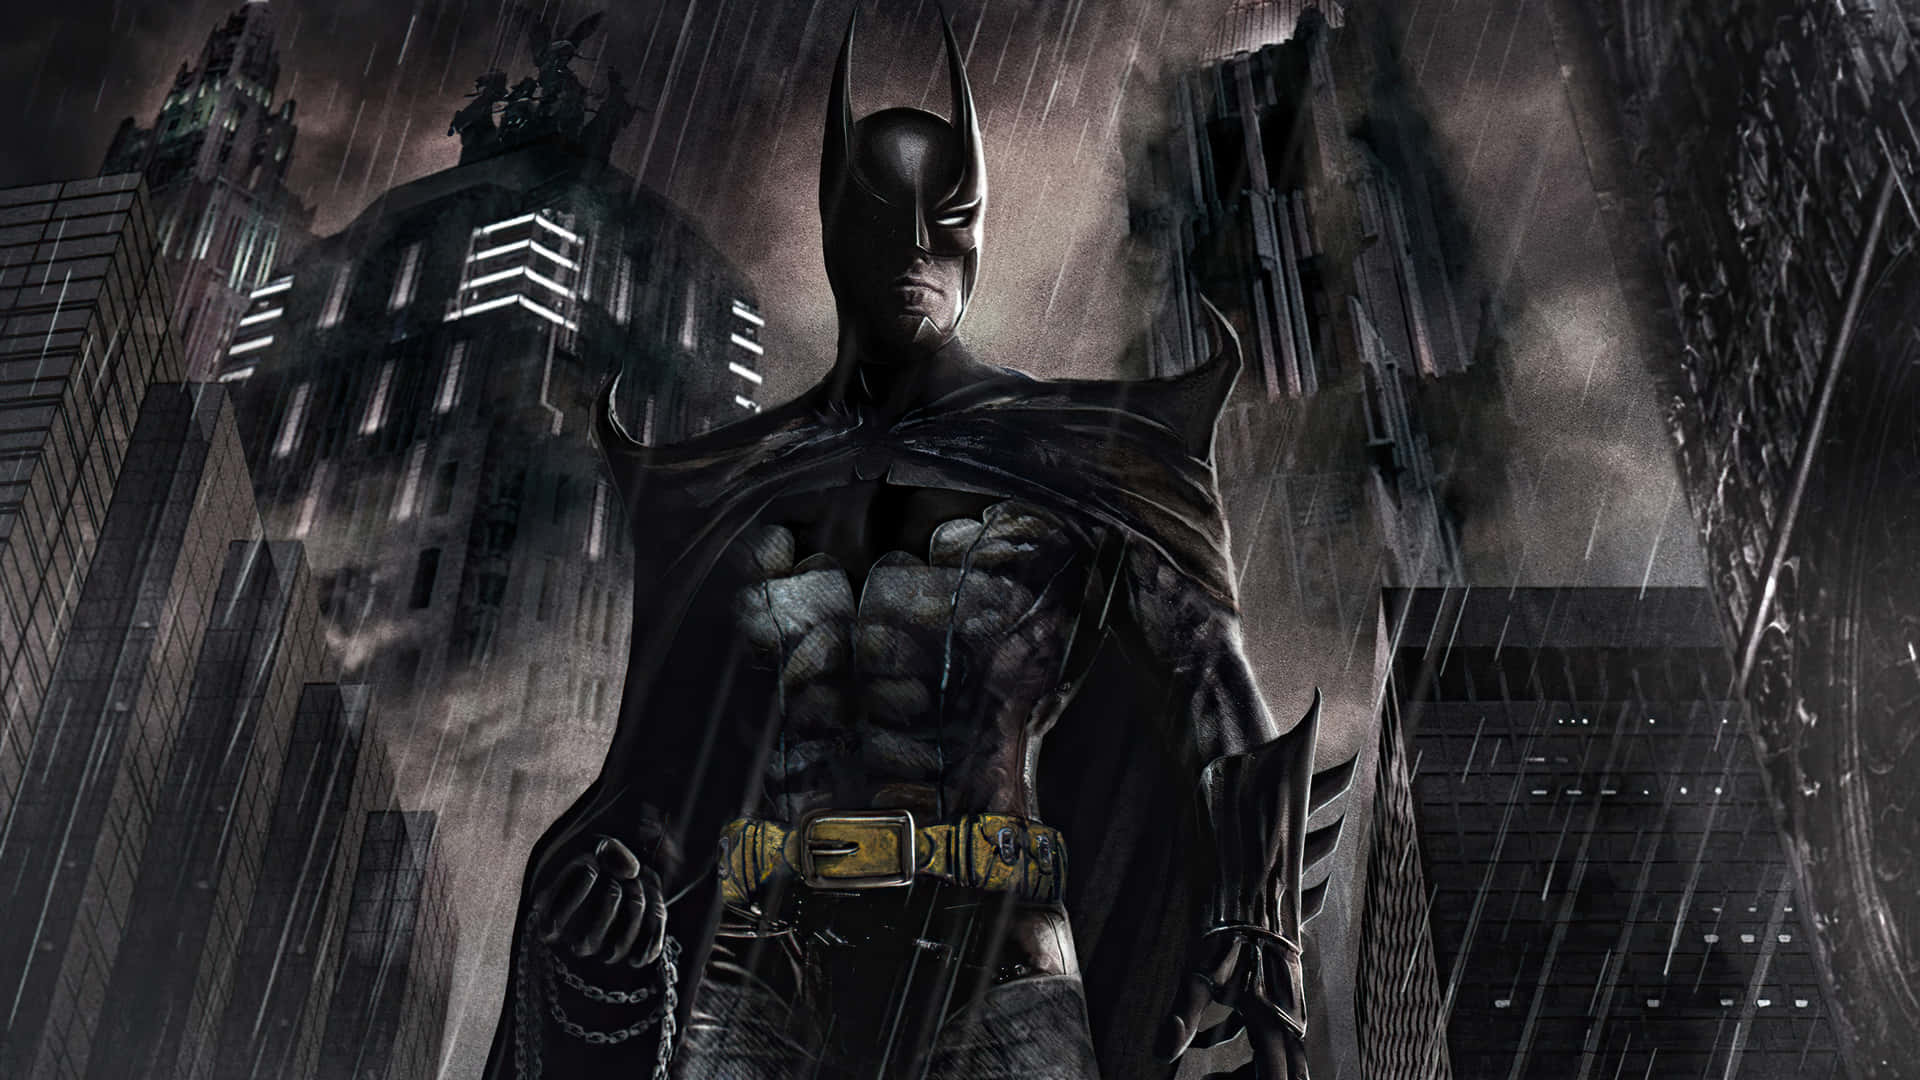 100+] Batman Arkham Asylum Wallpapers